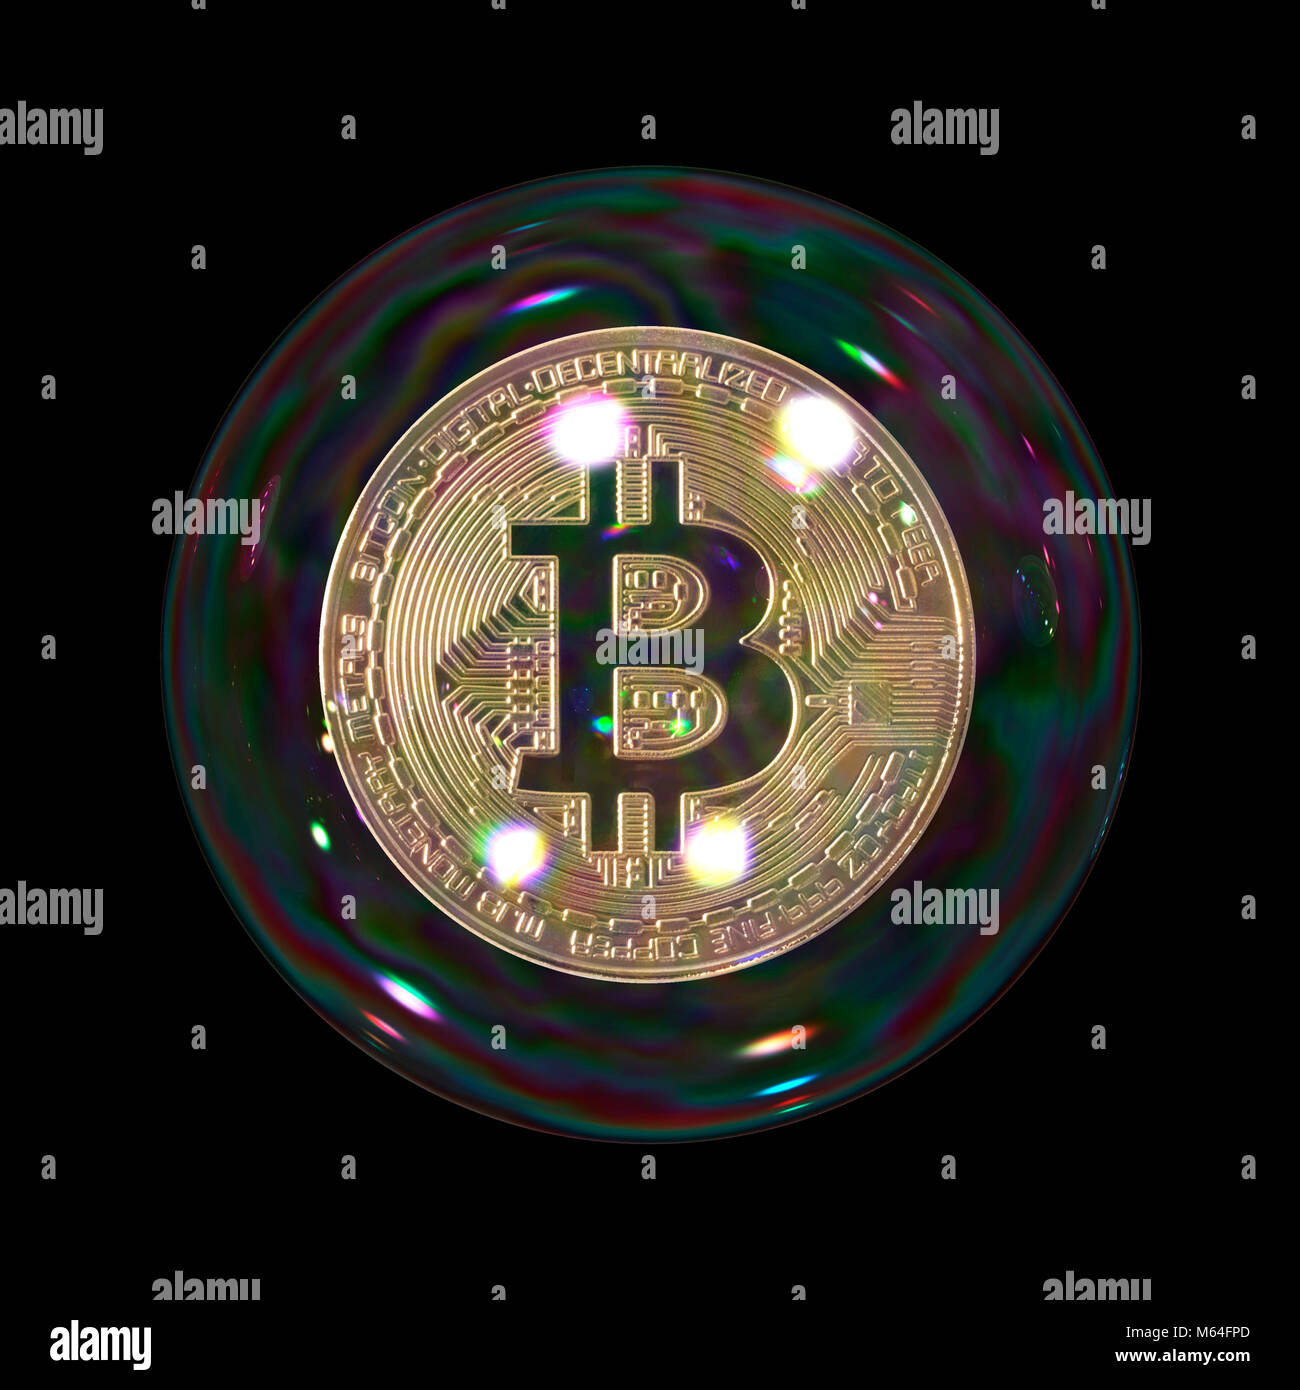 Bolla Bitcoin su sfondo nero, medaglia d'oro sospesa in bolla che rappresenta il concetto di rottura e fragile cryptocurrency digitale investimenti Foto Stock